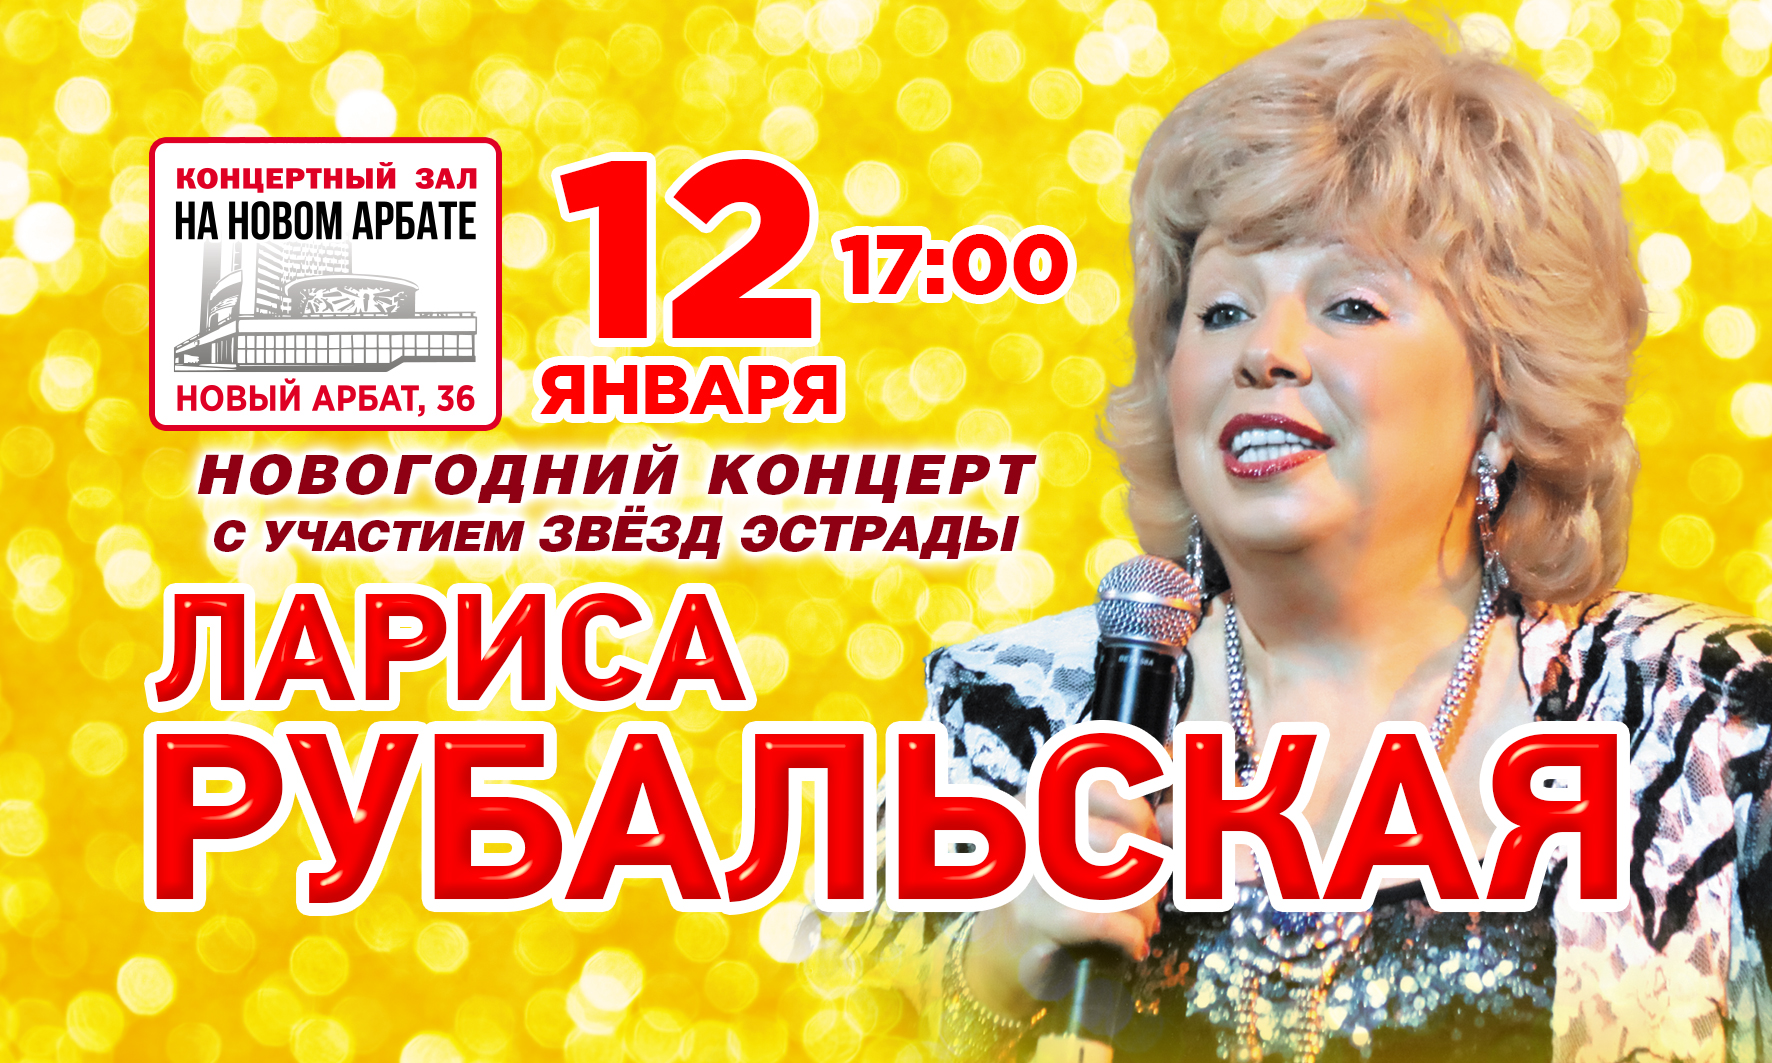 Купить билет на концерт Ларисы Рубальской  на сайте www.icetickets.ru  